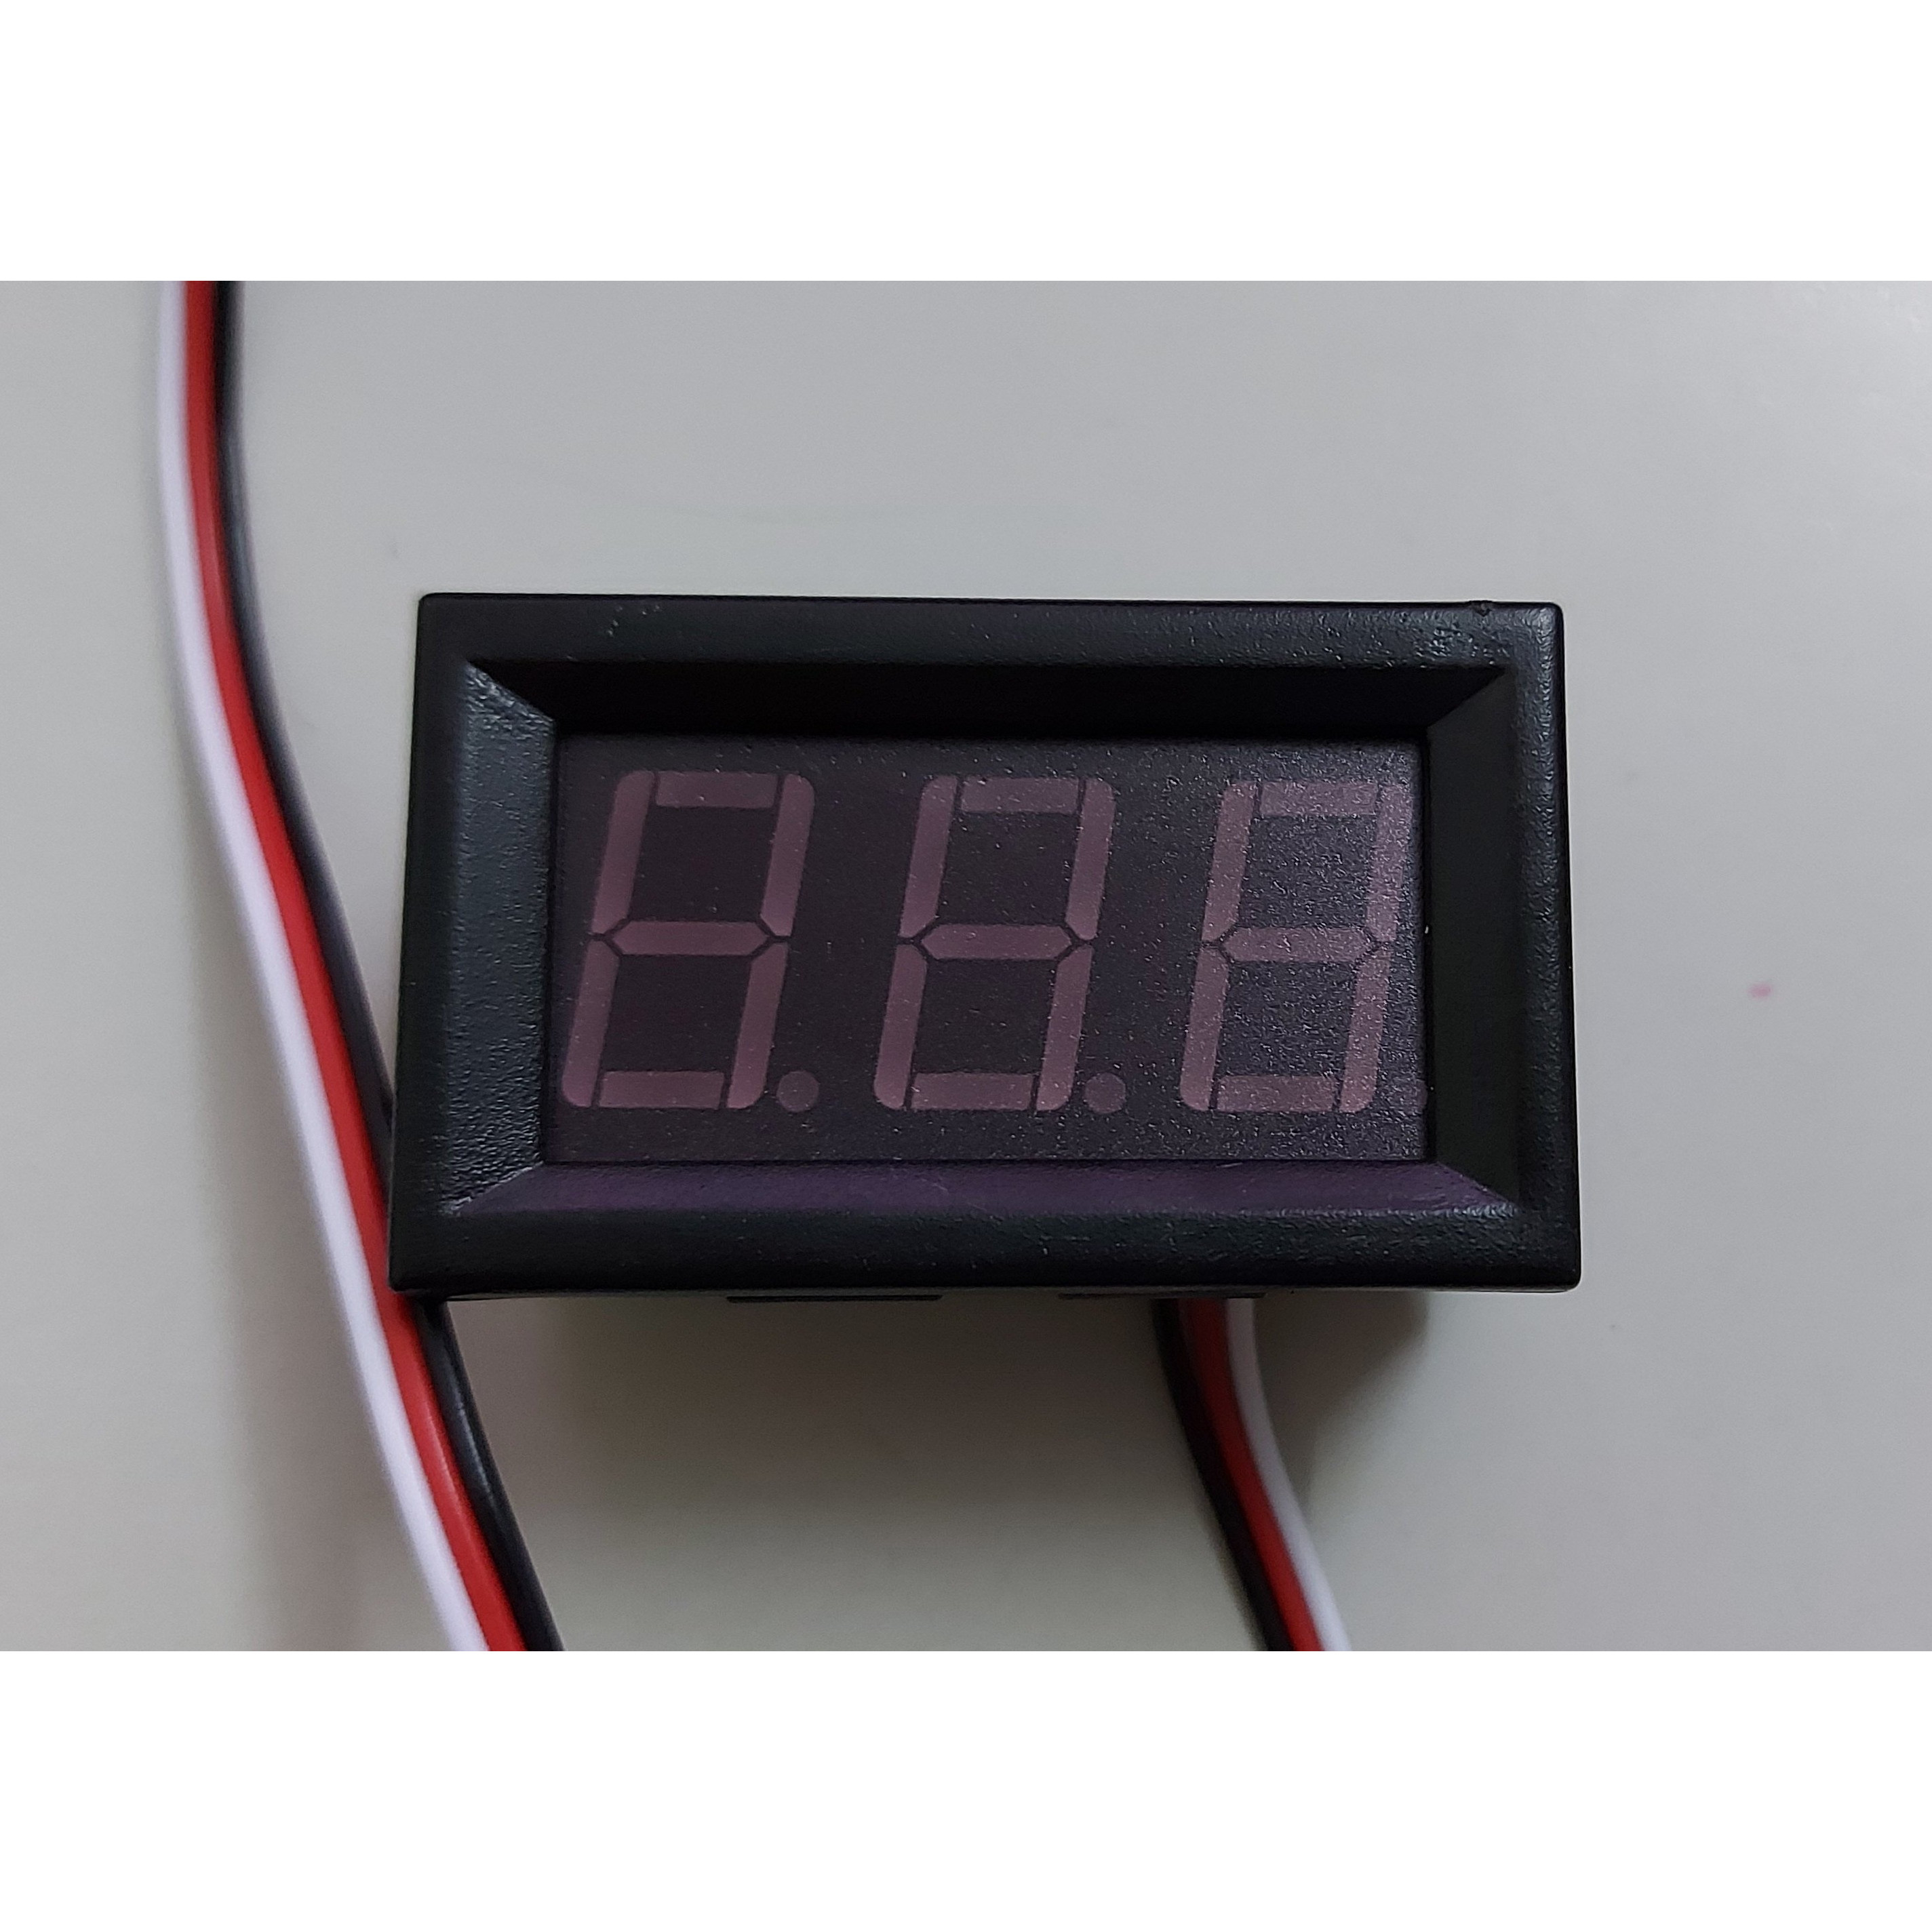 Đồng hồ led đo điện áp DC 0 - 100V 0.56&quot; màu đỏ